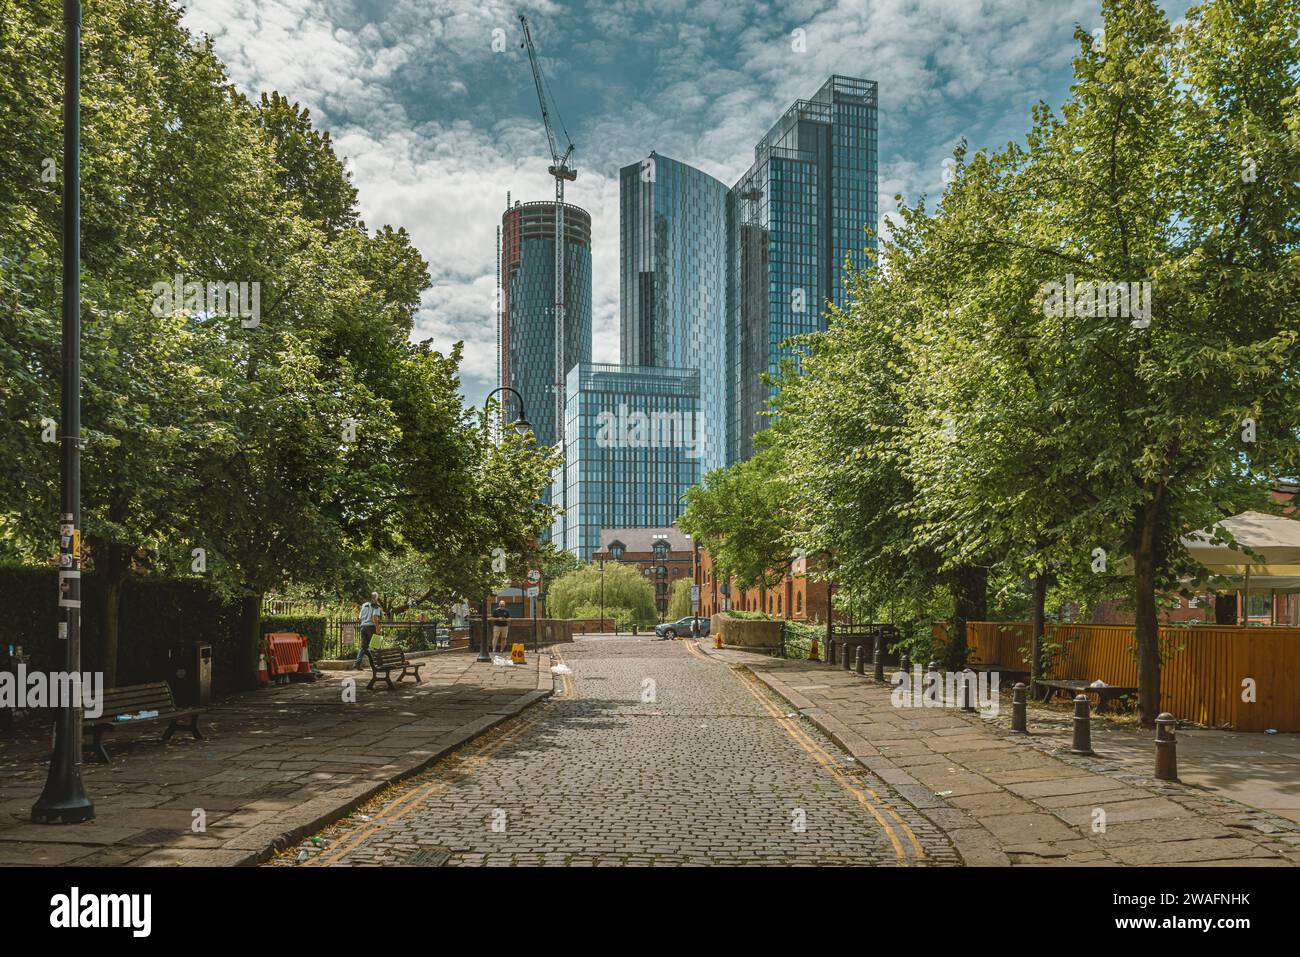 Una strada acciottolata alberata conduce l'occhio dall'architettura tradizionale all'architettura contemporanea dei grattacieli di Manchester. Foto Stock